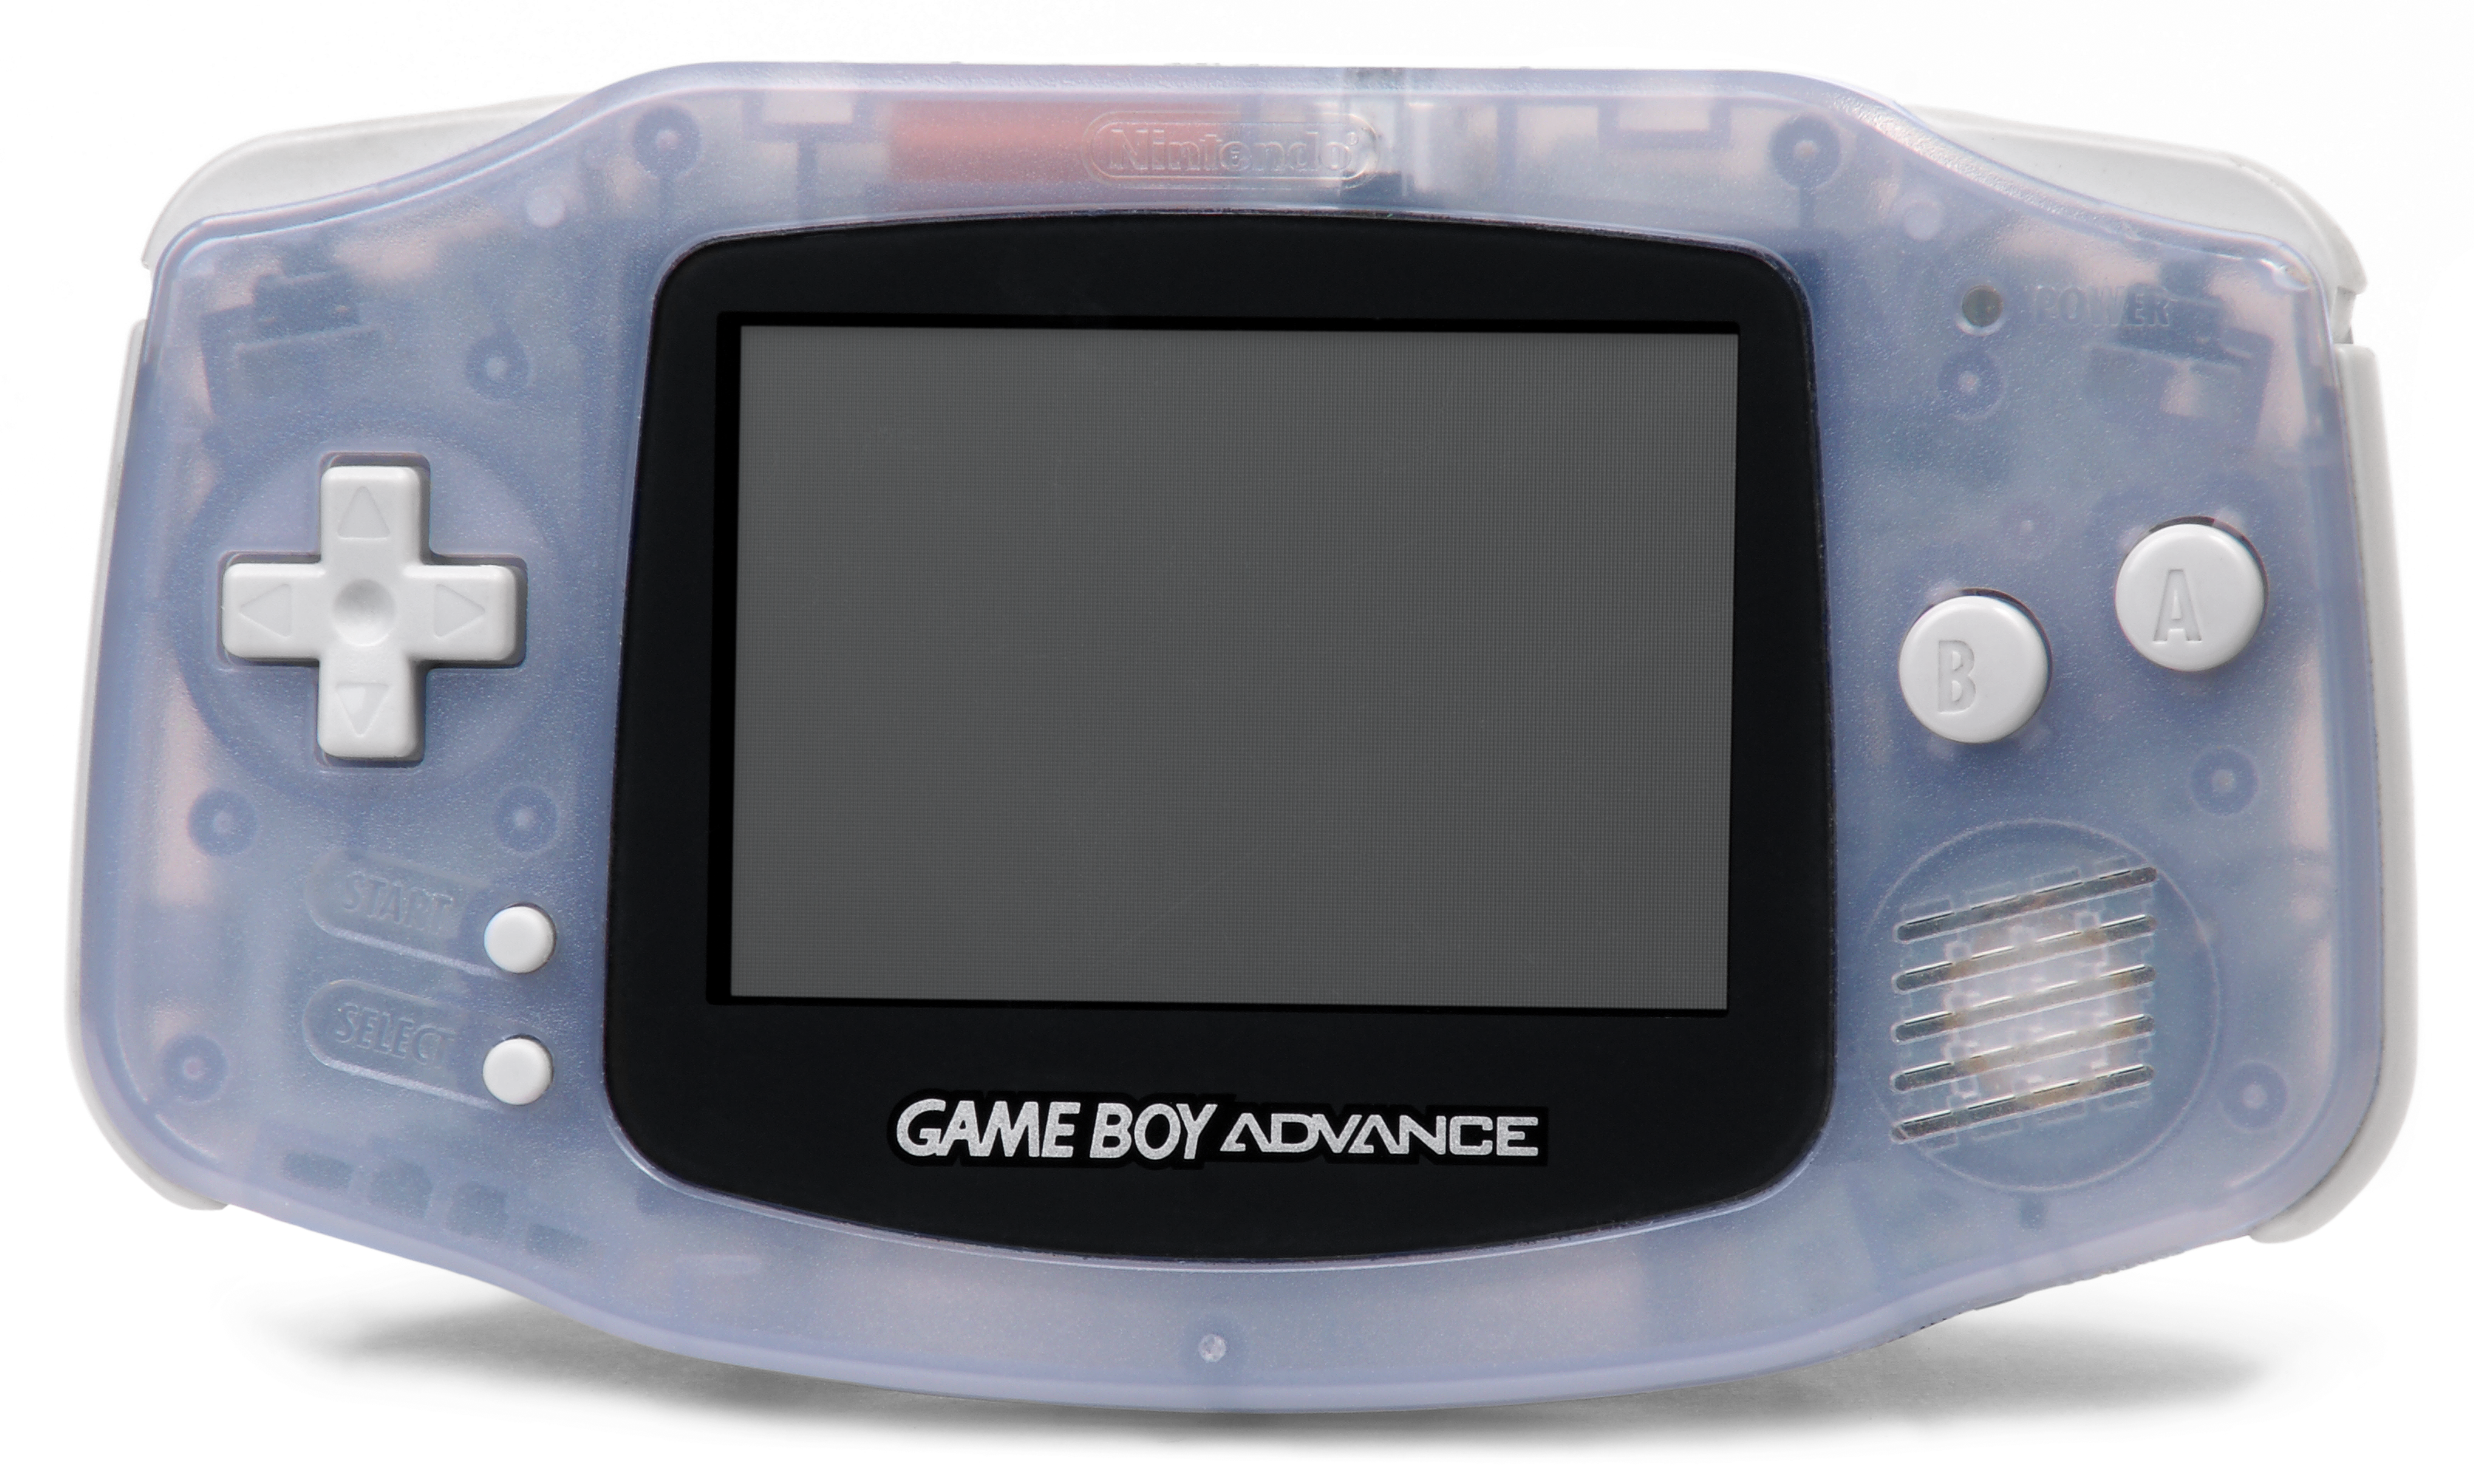 Nintendo boy advance. Игровая консоль Нинтендо геймбой. Геймбой Advance. Nintendo-game-boy-Advance цена. Nintendo Advance.